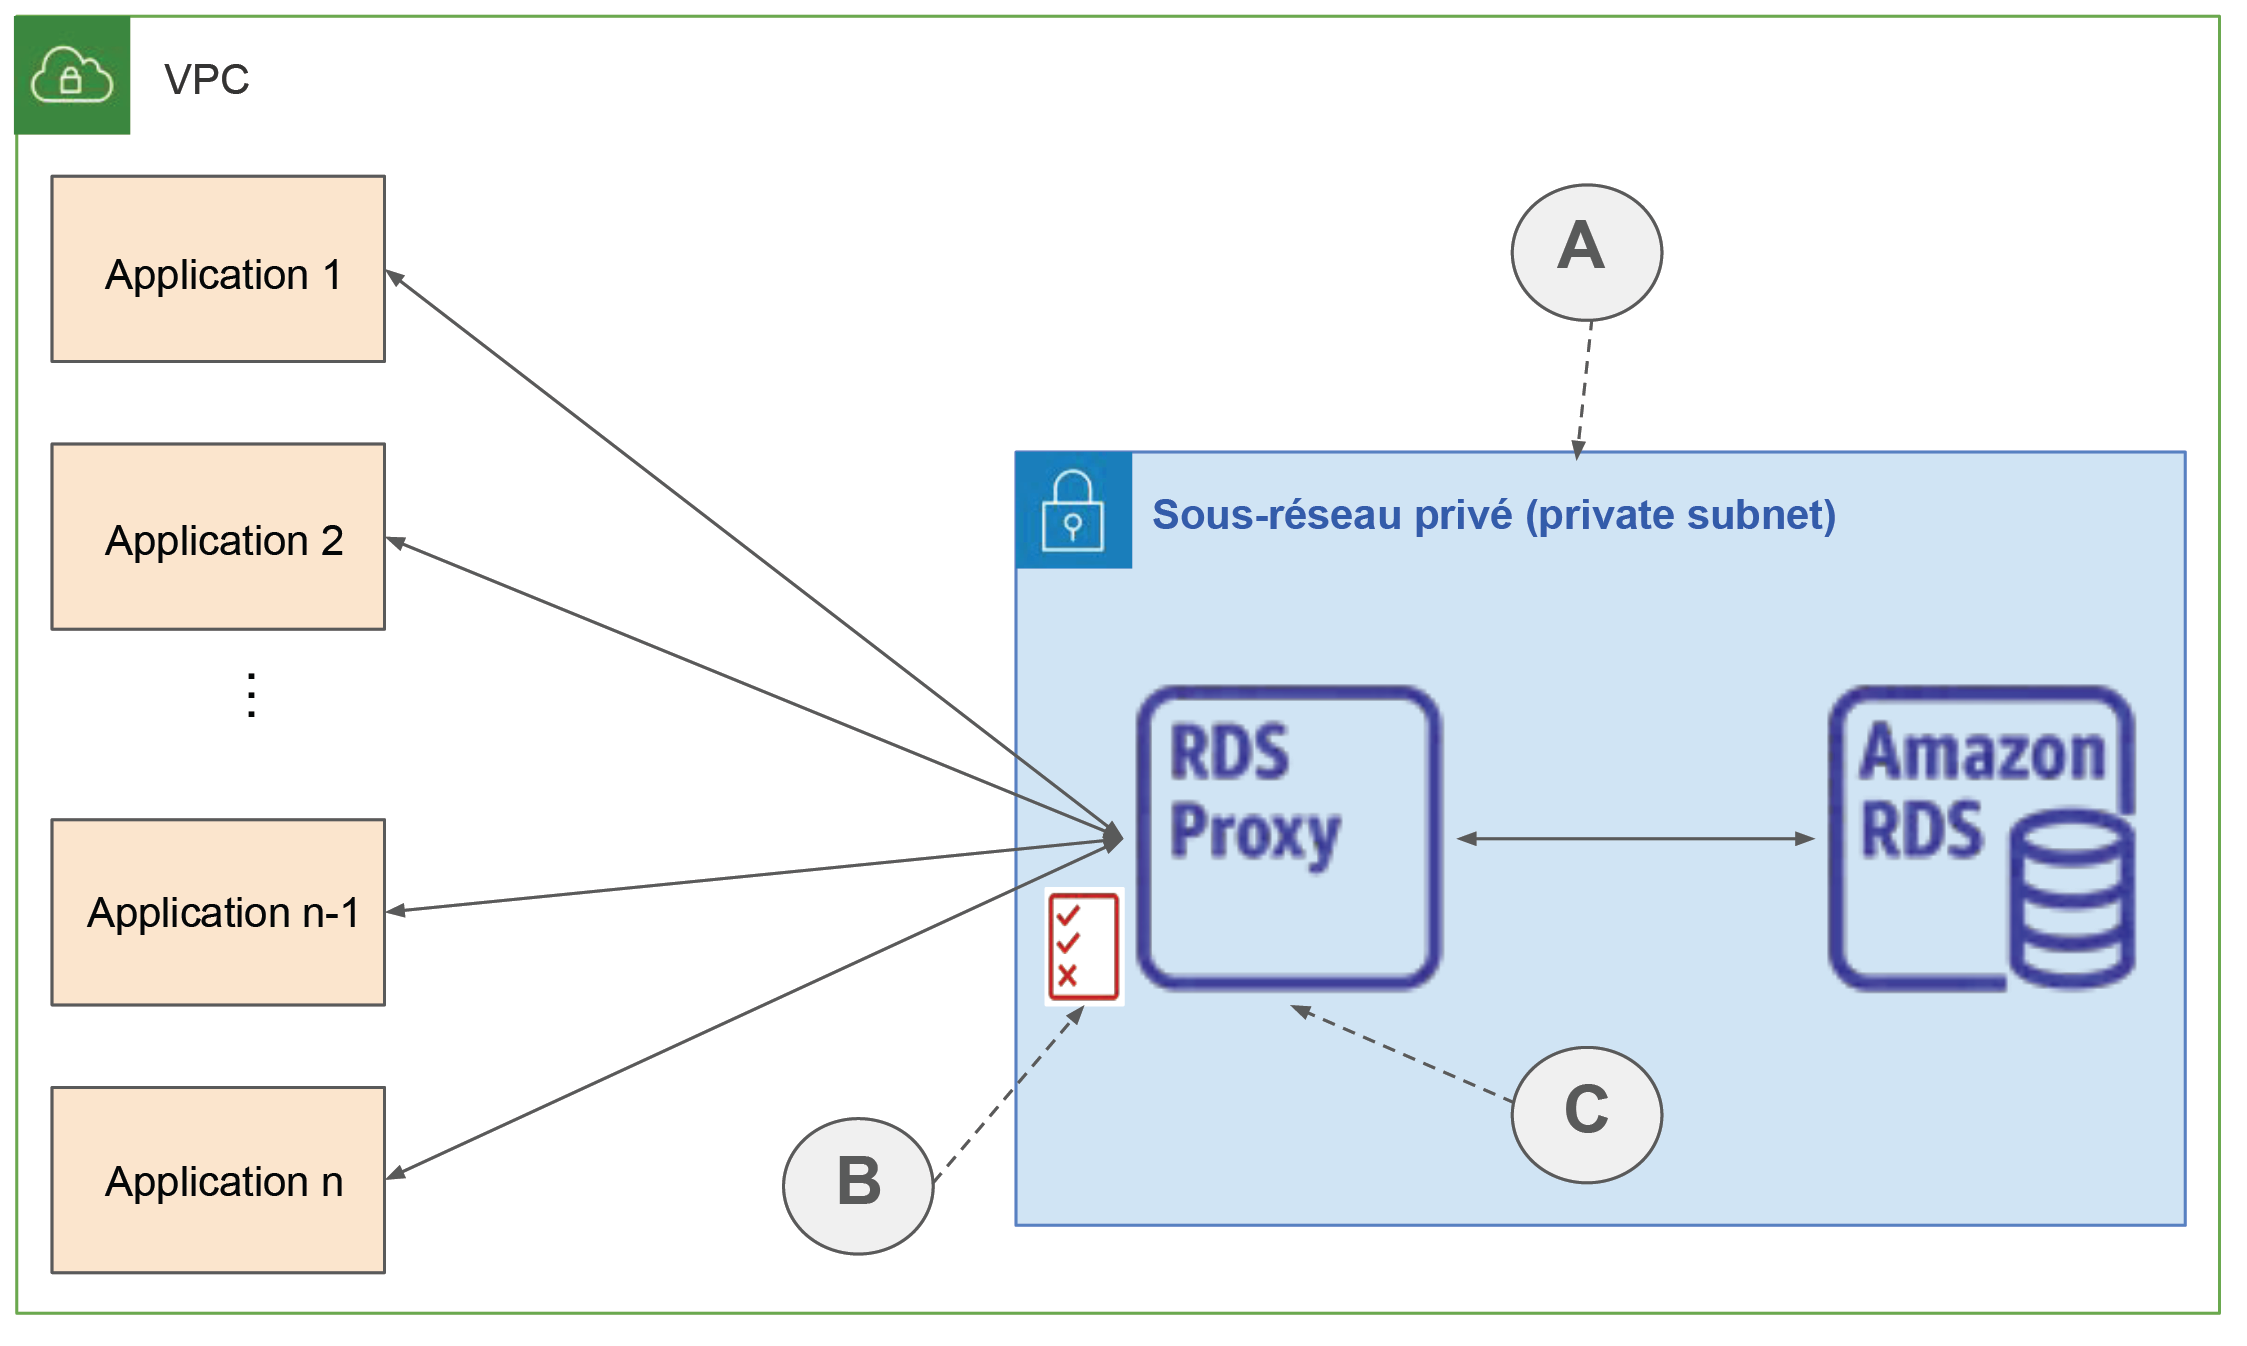 Un sous-réseau privé comporte RDS Proxy et Amazon RDS reliés par une flèche en double sens. Une flèche va de RDS Proxy vers Applications.